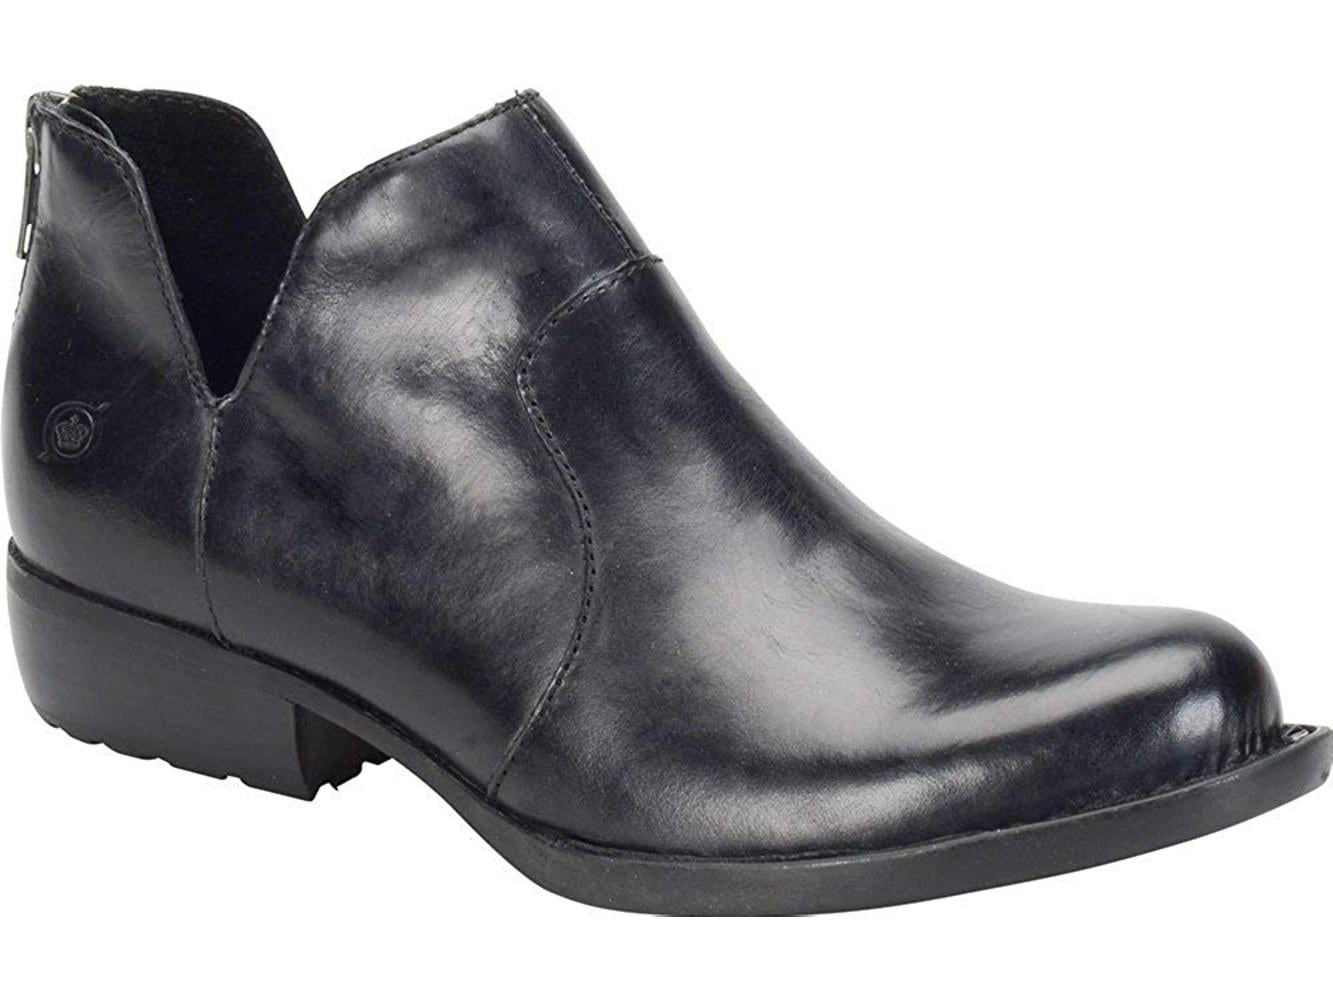 B.O.C Womens Kerri Leather Closed Toe Ankle Fashion Boots, Black, Size ...